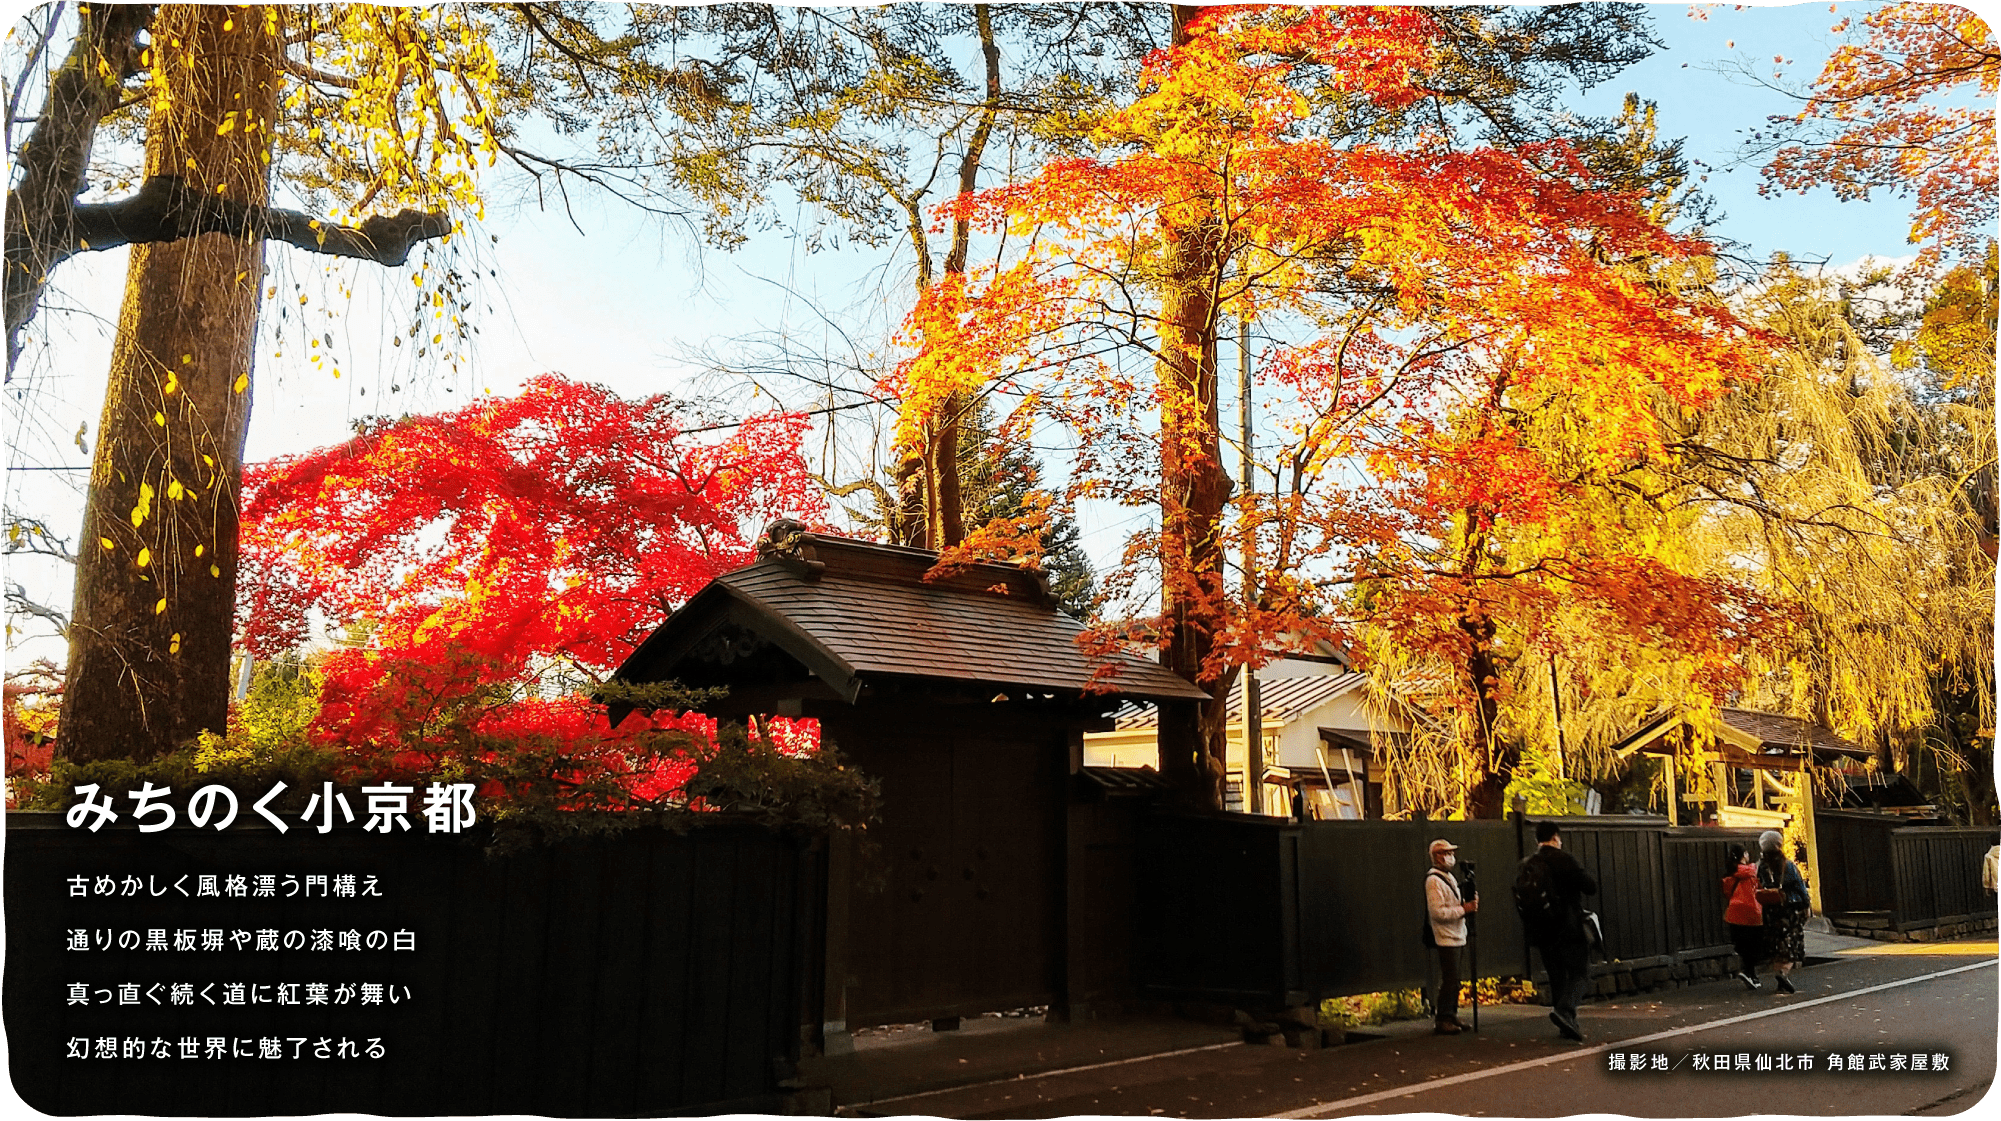 みちのく小京都　古めかしく風格漂う門構え通りの黒板塀や蔵の漆喰の白真っ直ぐ続く道に紅葉が舞い幻想的な世界に魅了される